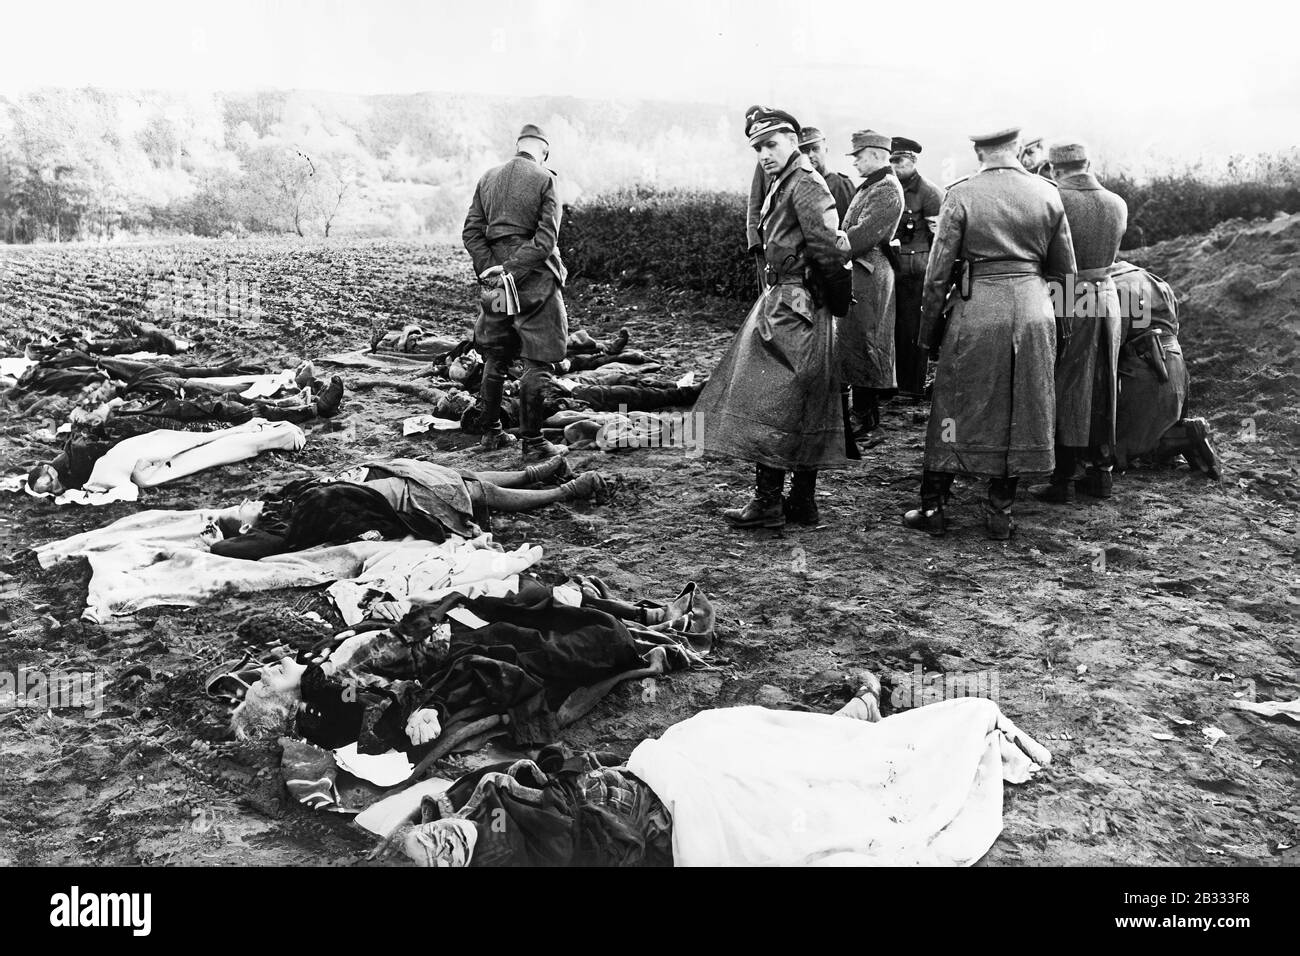 Octobre 1944 des officiers allemands du village de Nemmersdorf, où des soldats de l'Armée rouge ont assassiné plusieurs dizaines d'habitants. Goebbels a essayé d'utiliser ce crime pour renforcer la haine des Soviétiques en Allemagne Banque D'Images